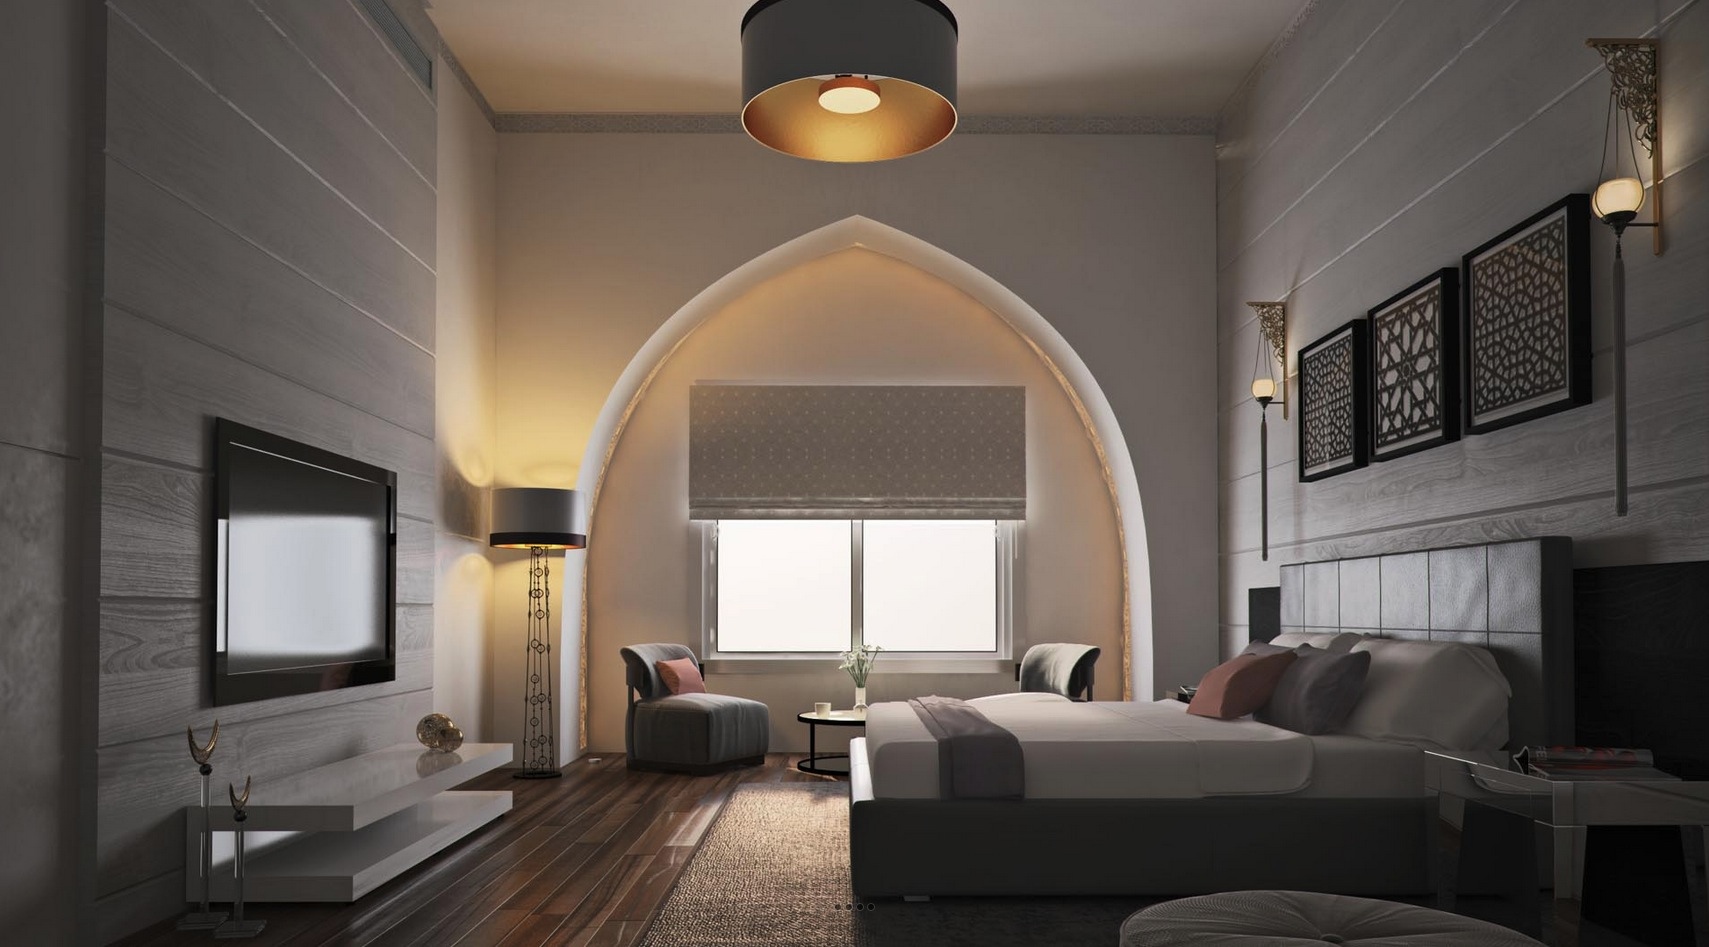 Moroccan Style Bedroom Interior Design Ideas